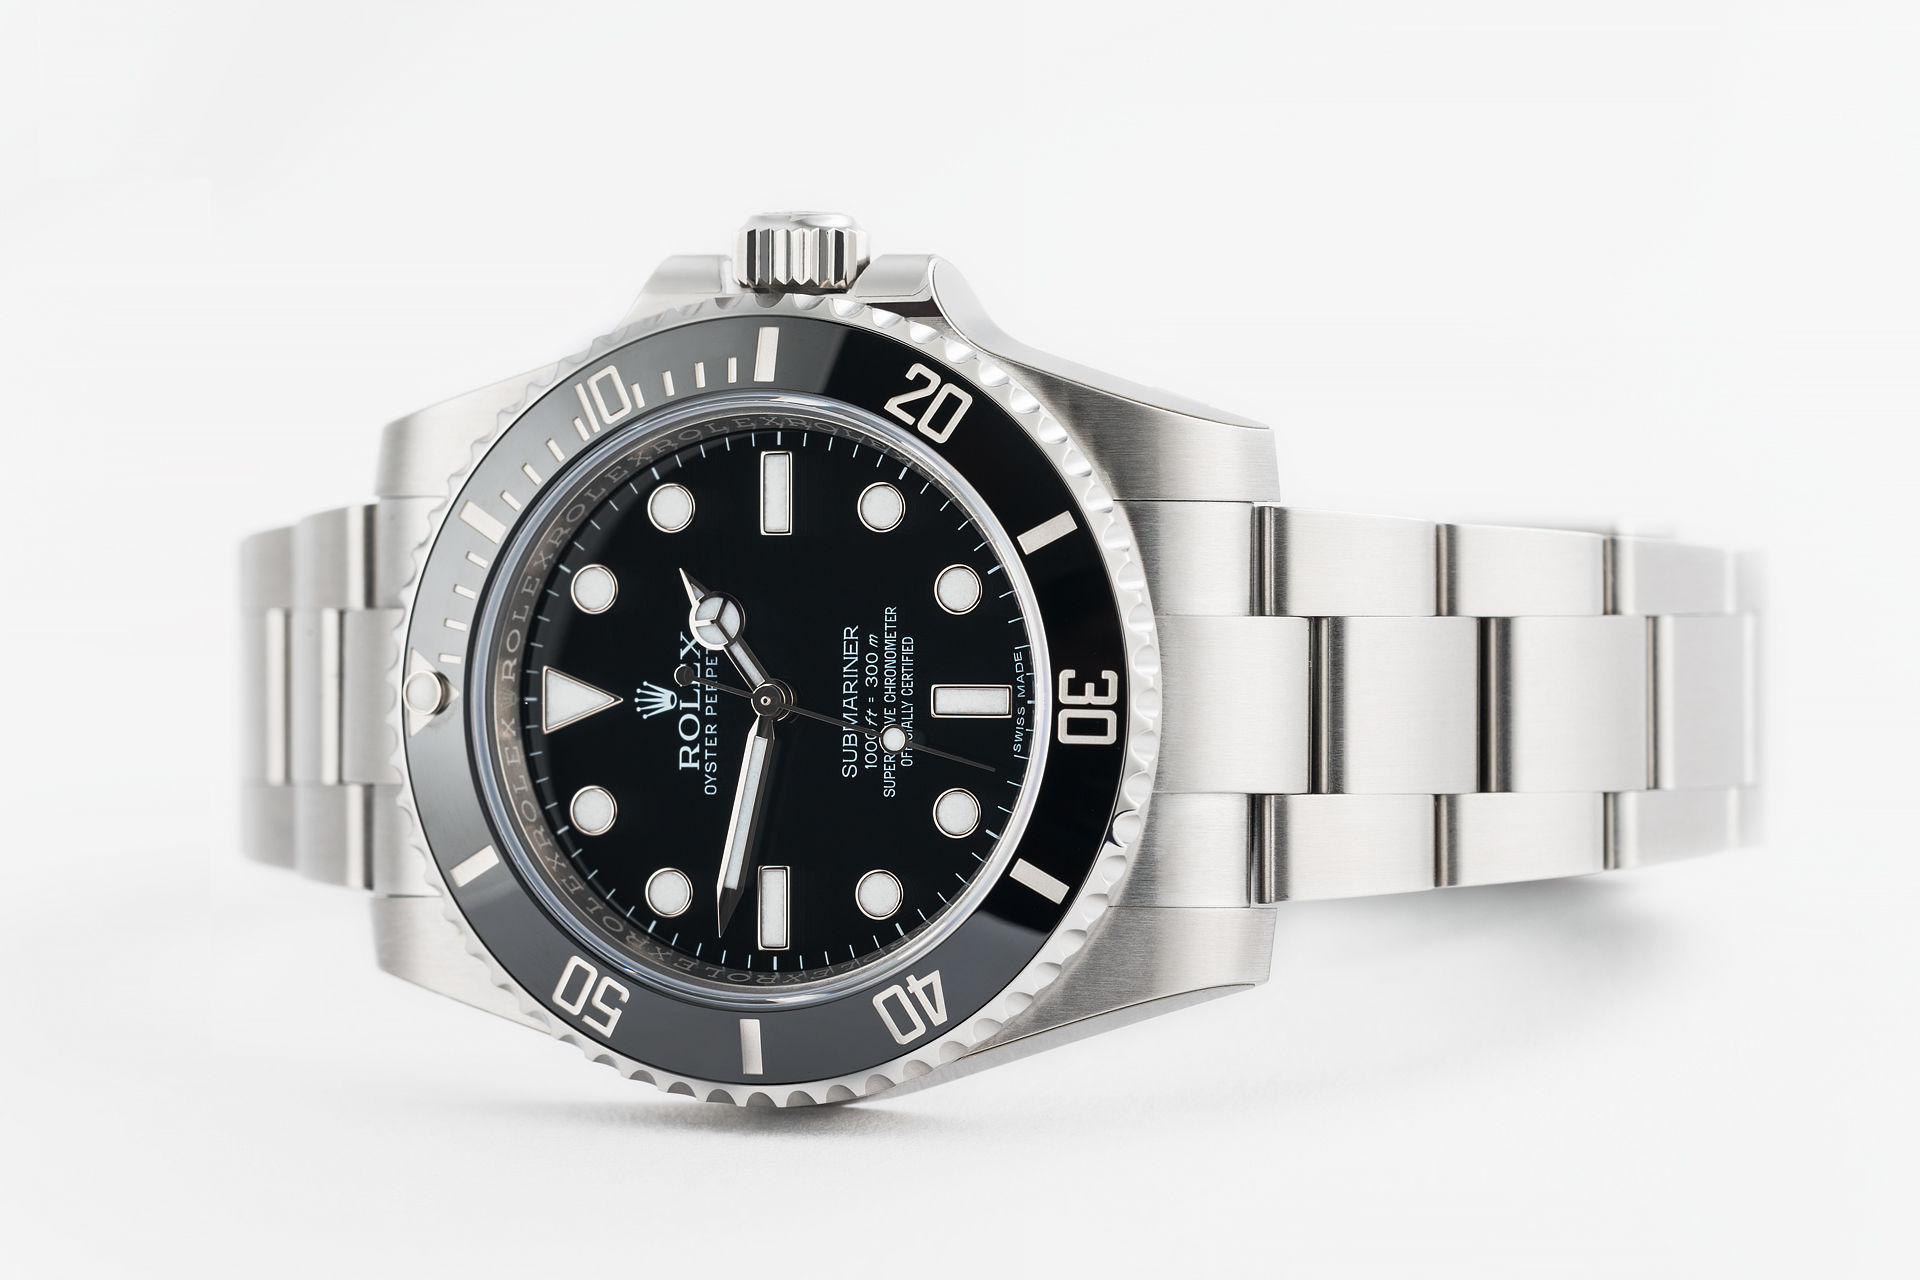 ref 114060 | 'Brand New' 5 Year Warranty | Rolex Submariner 